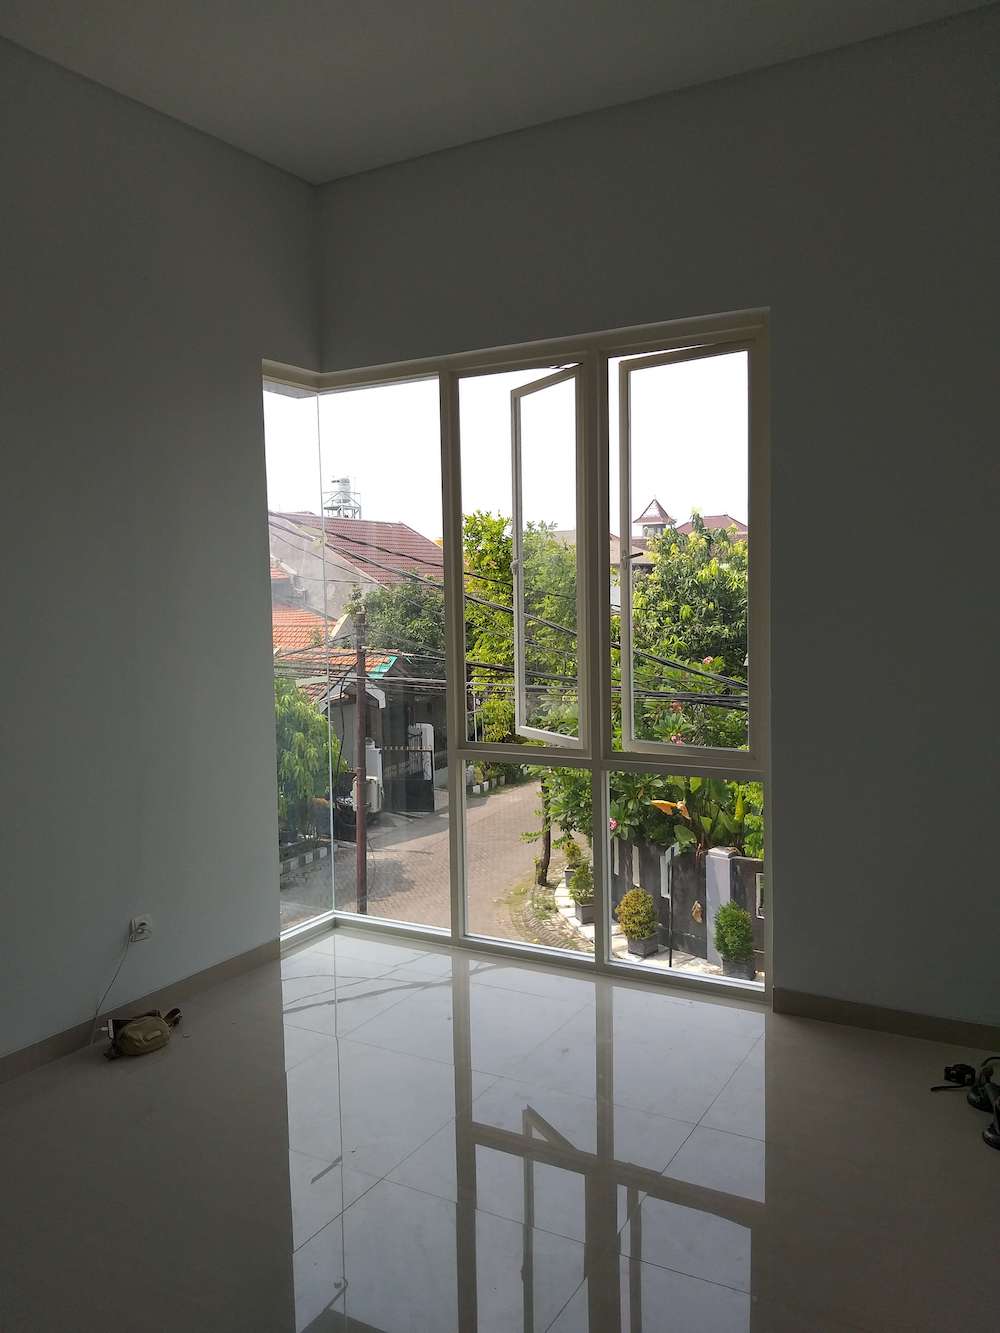 Beli Rumah Bangunan Baru Surabaya Tenggilis